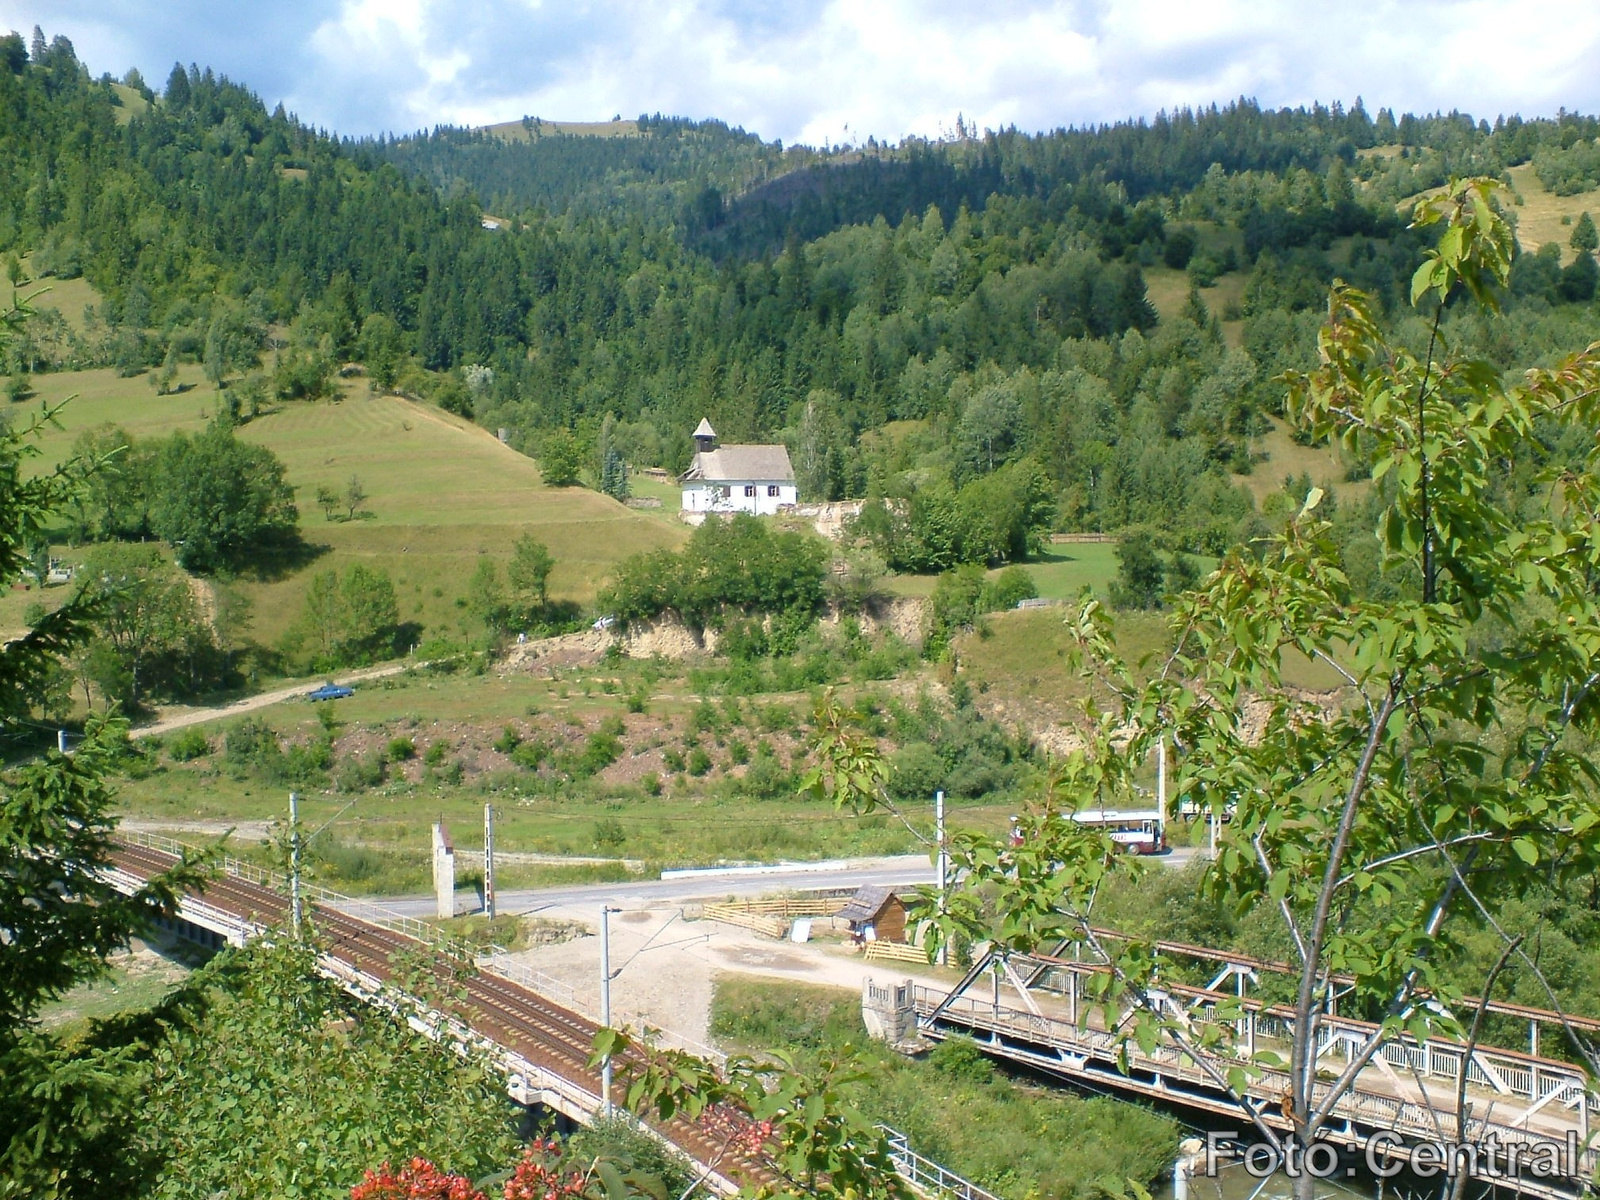 A vasúti pálya a Rákóczi vár felől fotózva.Festői szépségű panor